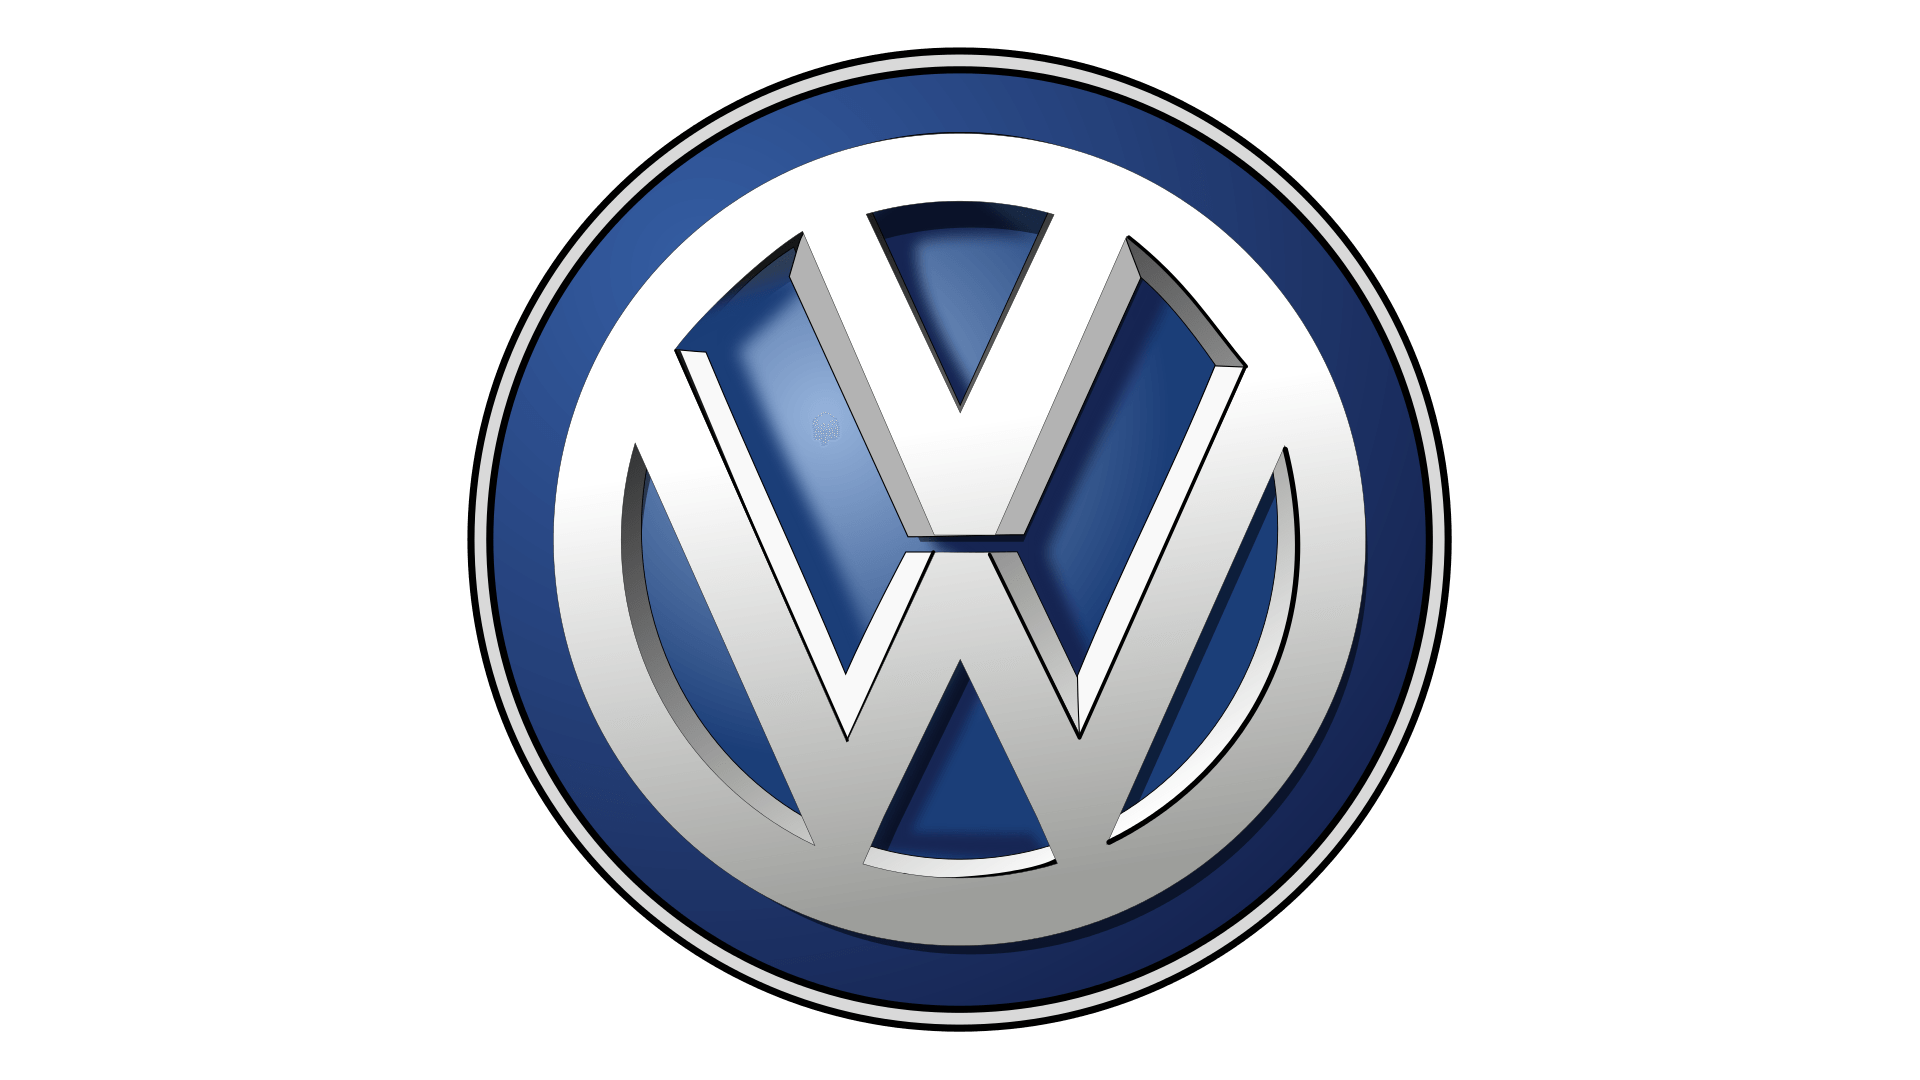 Volkswagen VIN Decoder